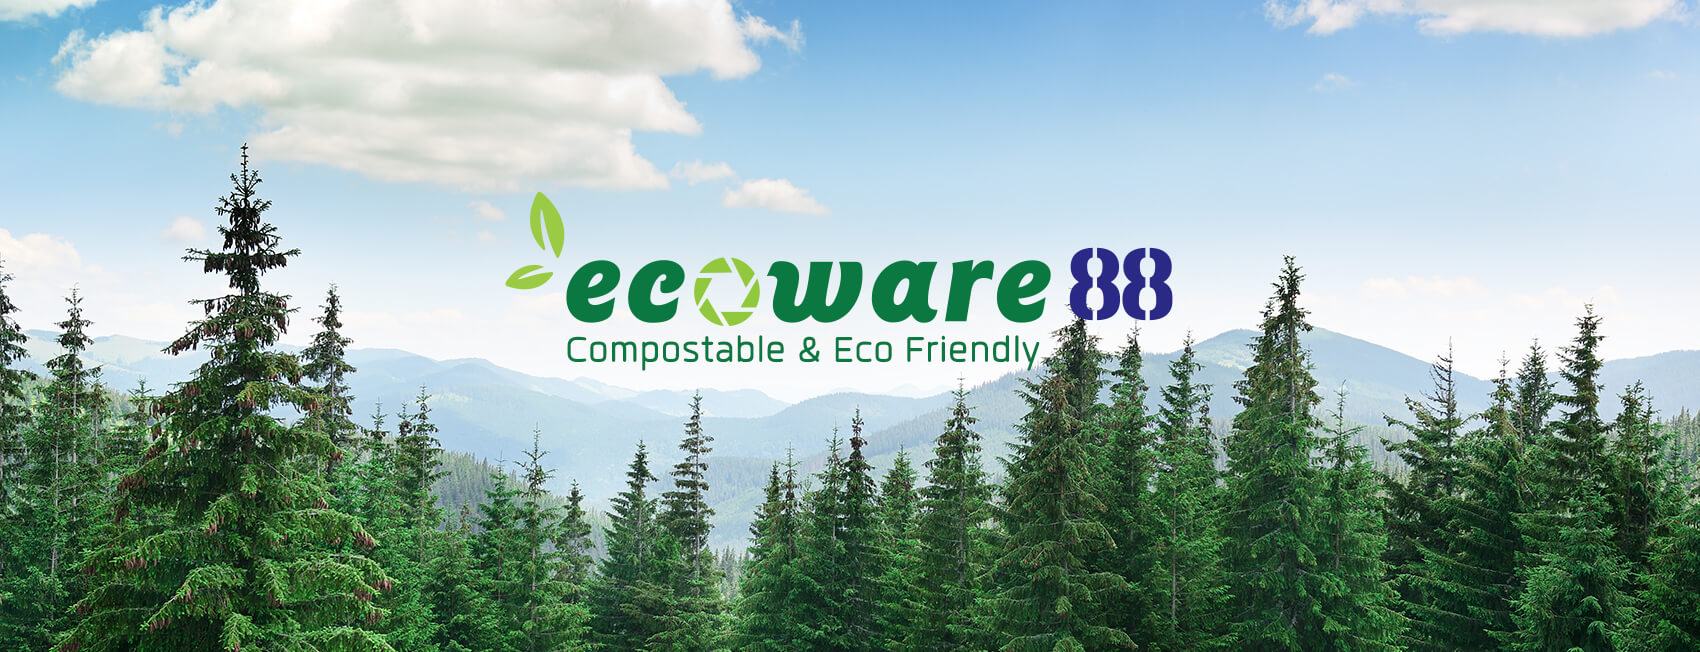 ecoware88